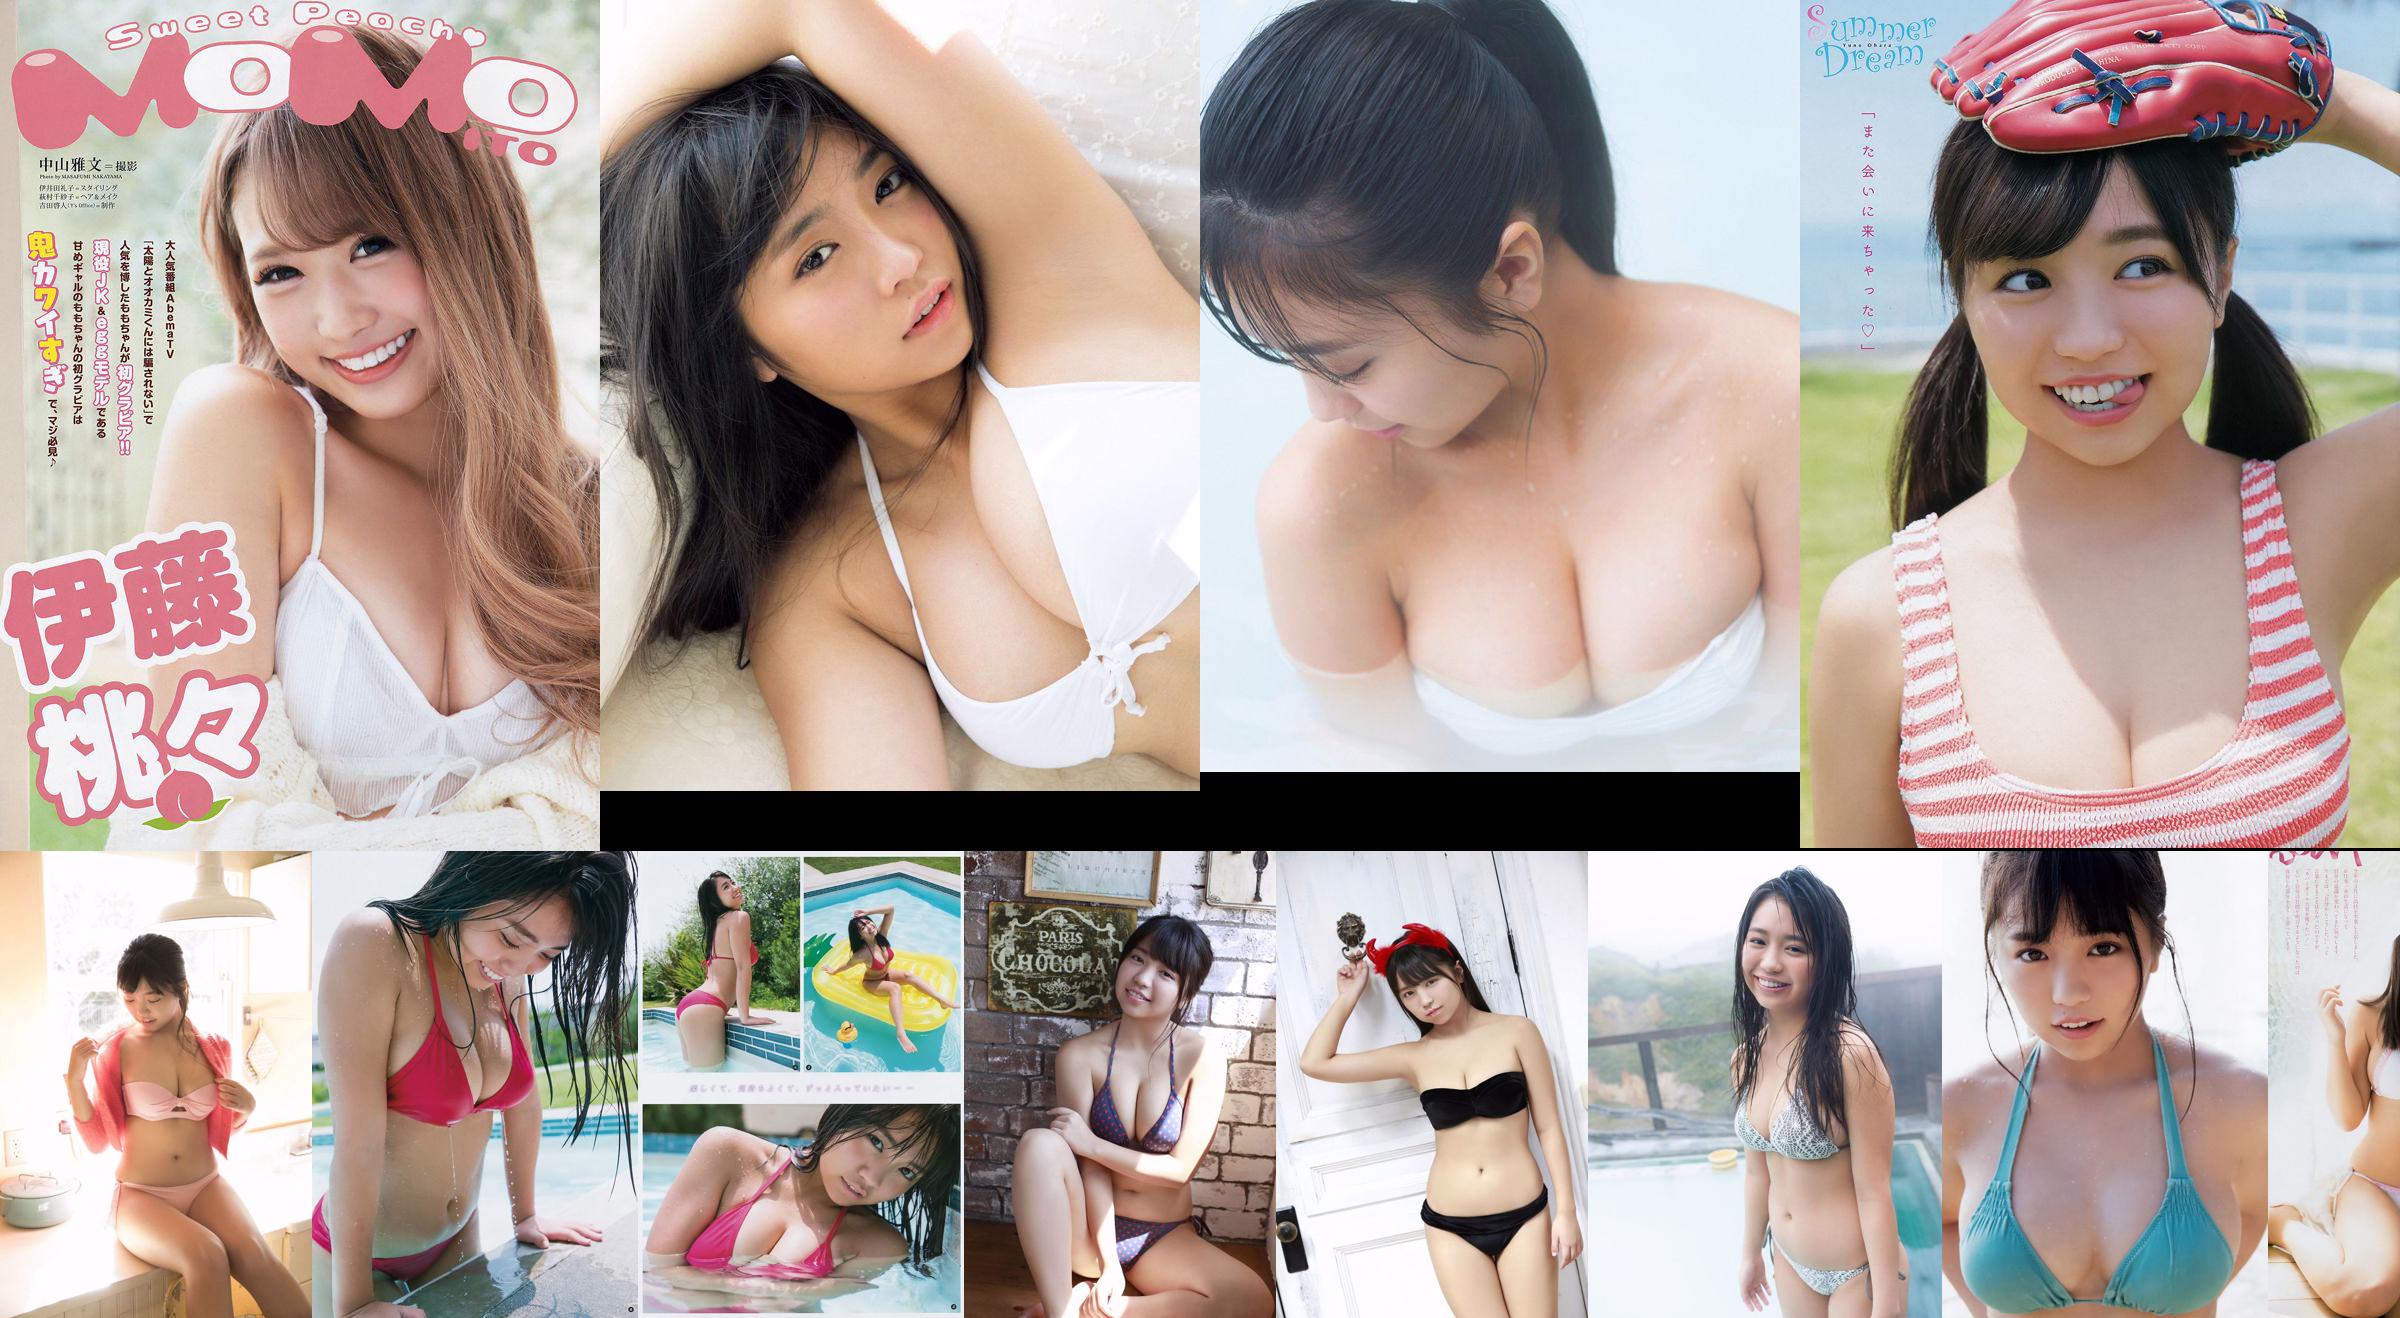 Yuno Ohara Yuka Ogura Miyu Kitamuki Kasumi Arimura Aya Kawasaki Juri Takahashi Erika Suzuki [Wöchentlicher Playboy] 2018 Nr. 21 Foto No.869643 Seite 15